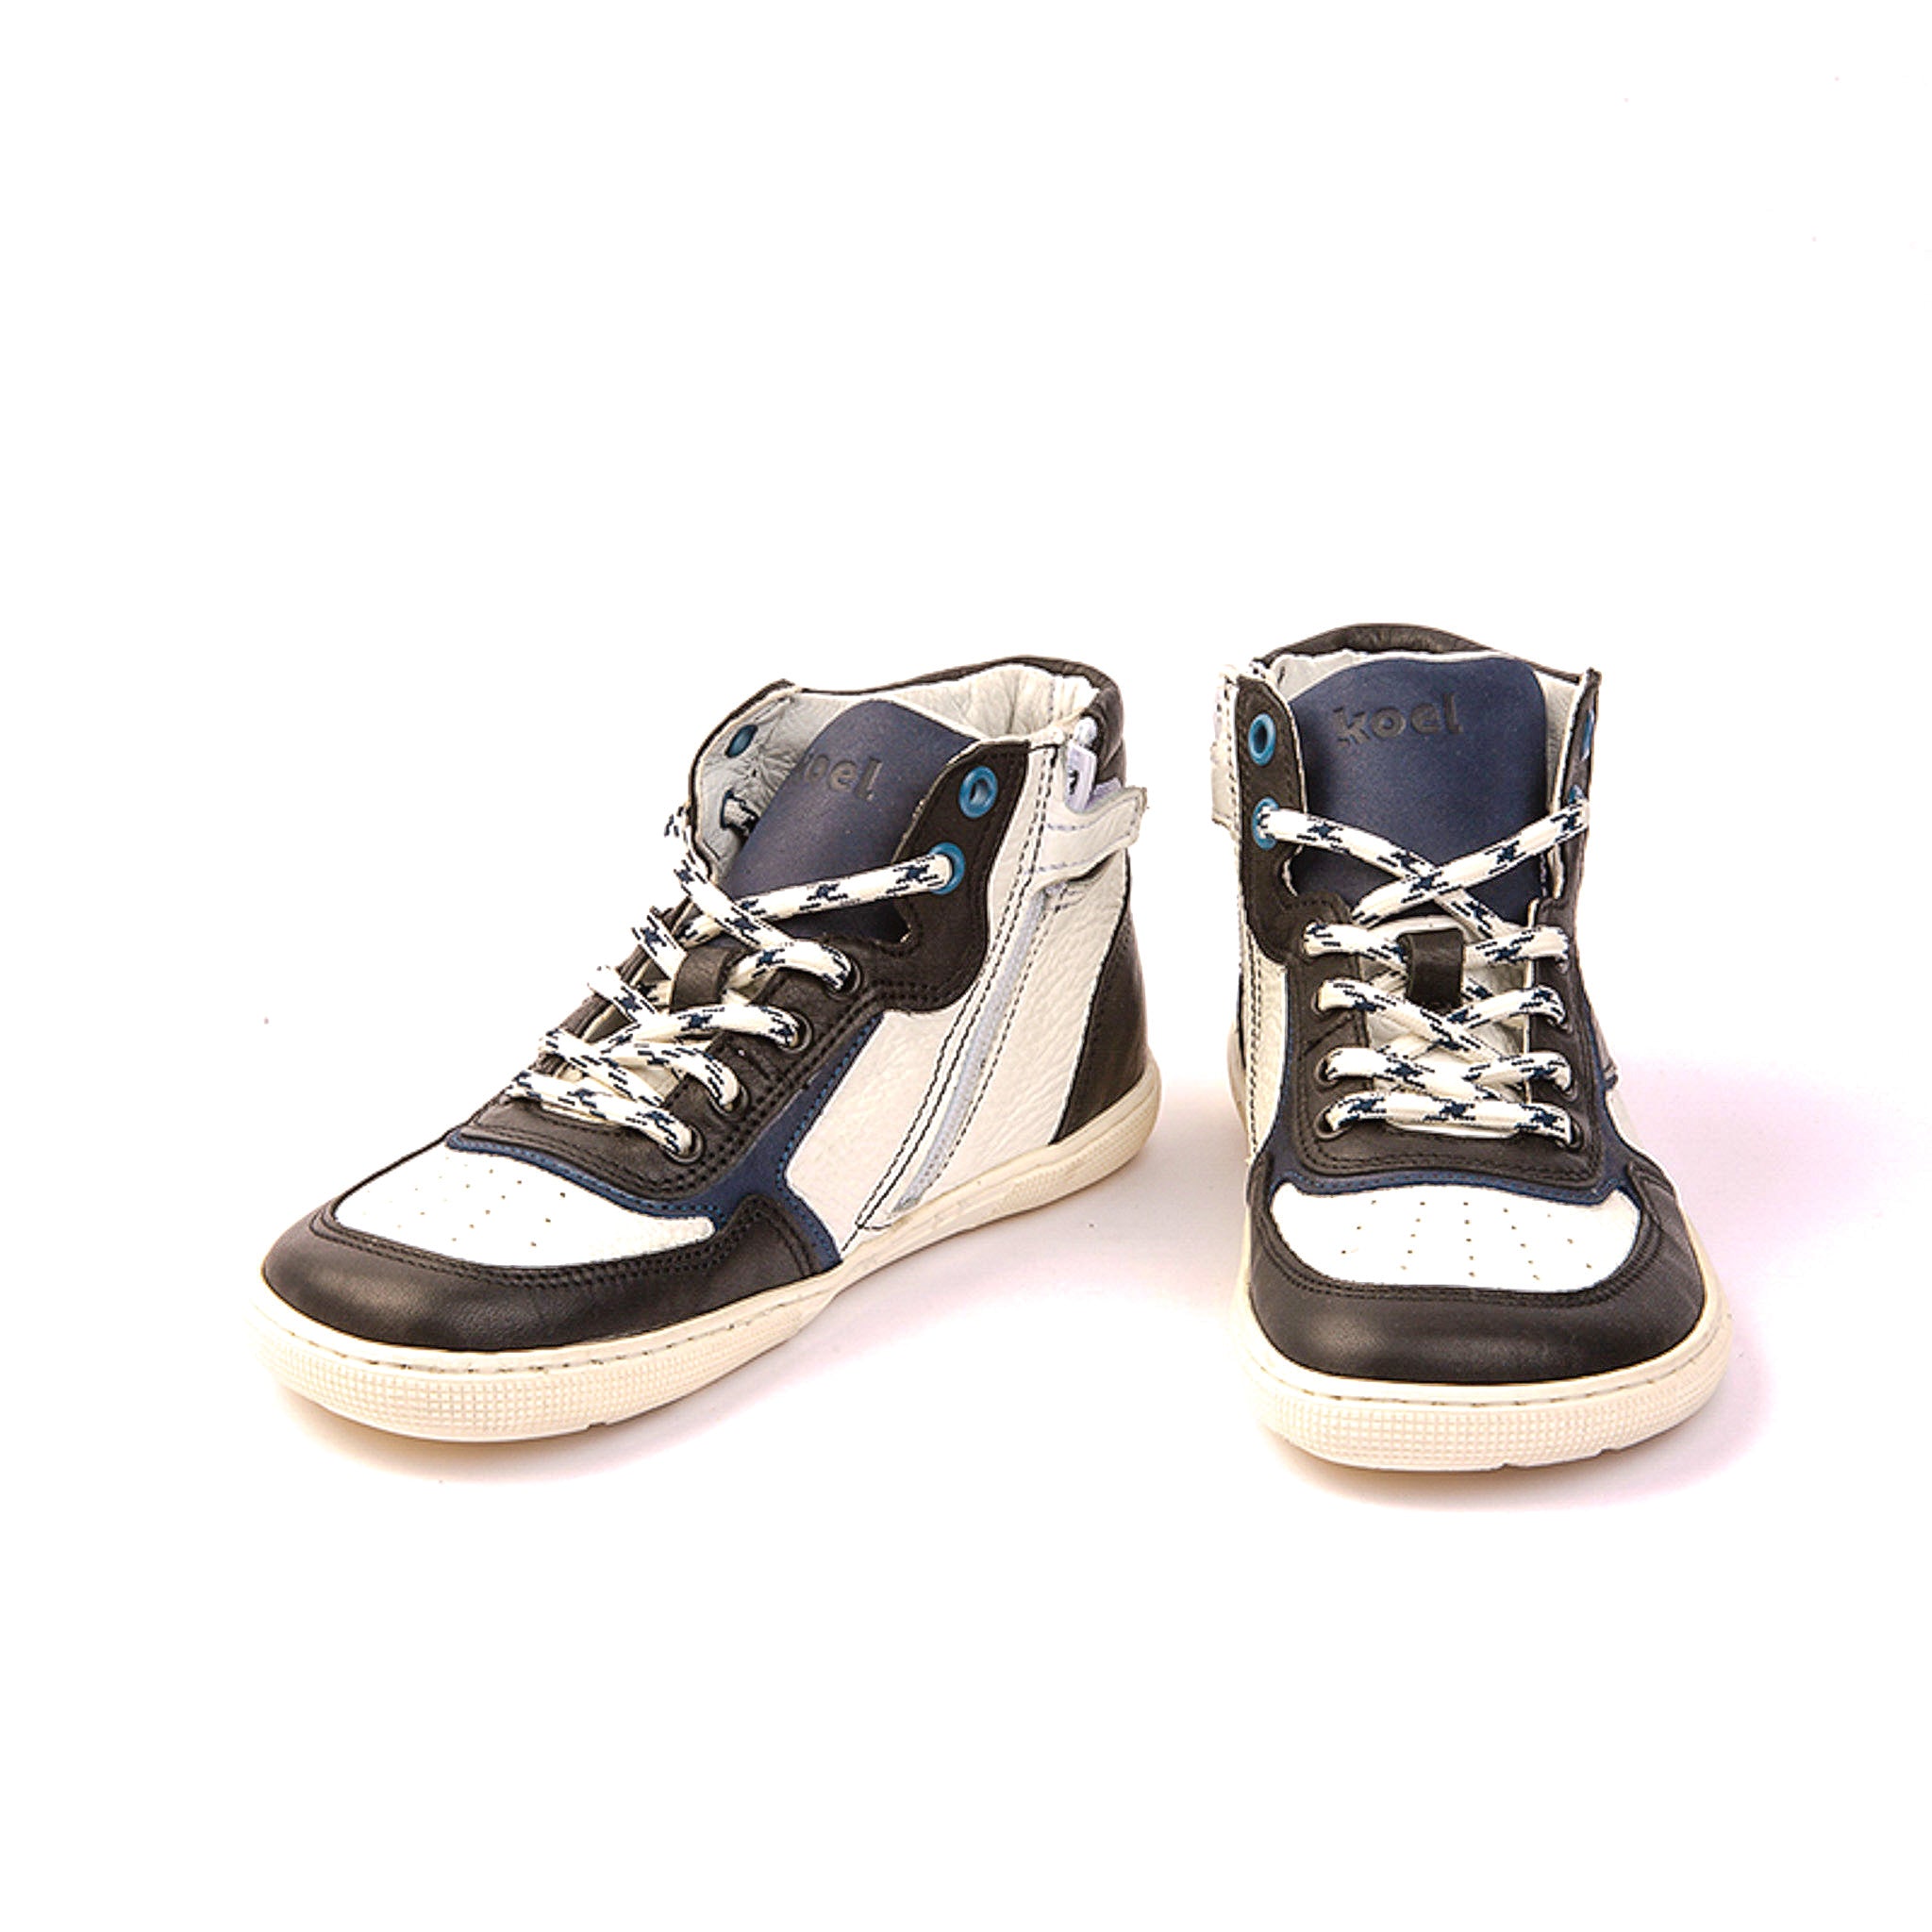 Barefoot DANISH Napa – Koel Shoes